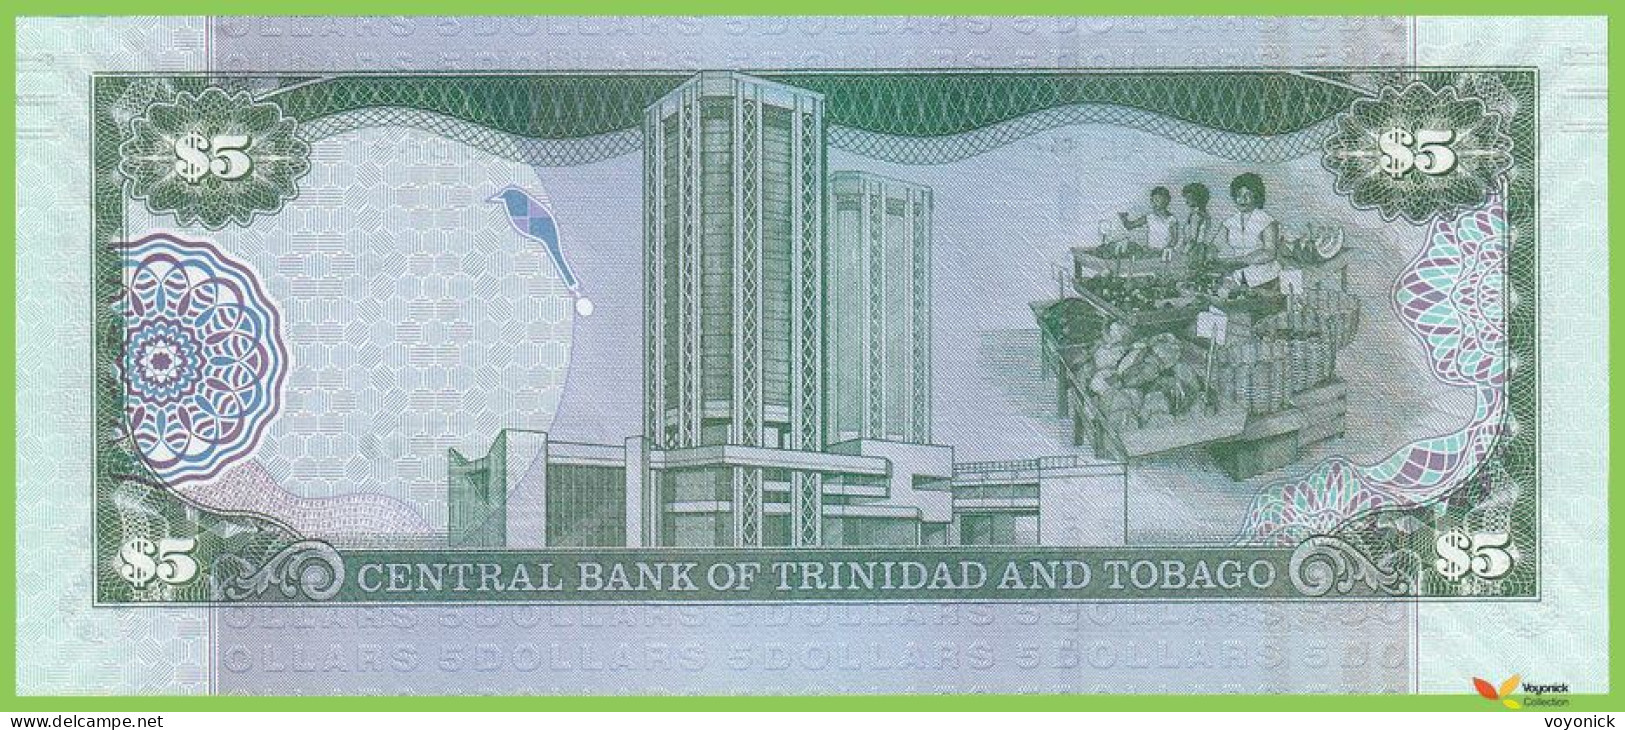 Voyo TRINIDAD & TOBAGO 5 Dollars 2006(2017) P47cr B229bz ZZ UNC Replacement - Trinité & Tobago